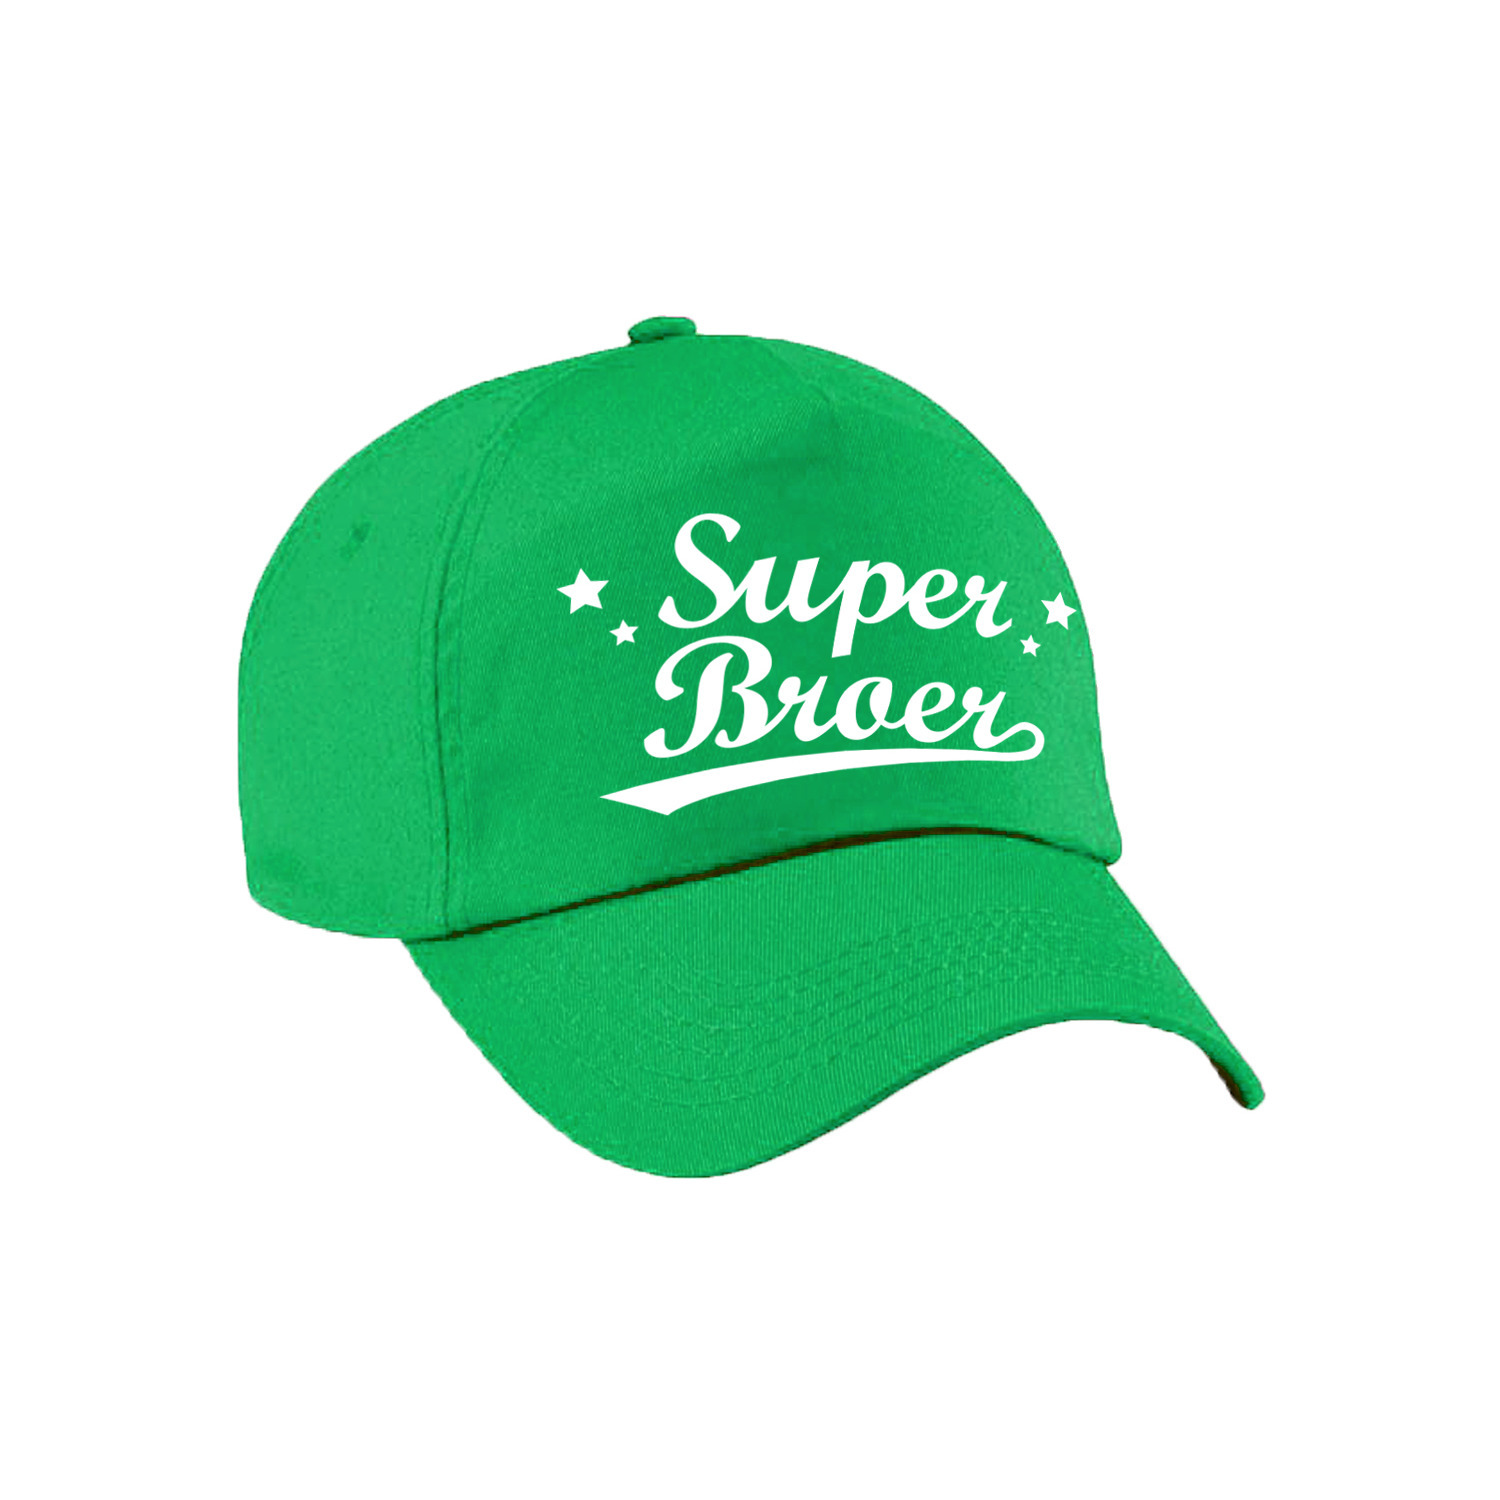 Super broer cadeau pet /cap groen voor heren